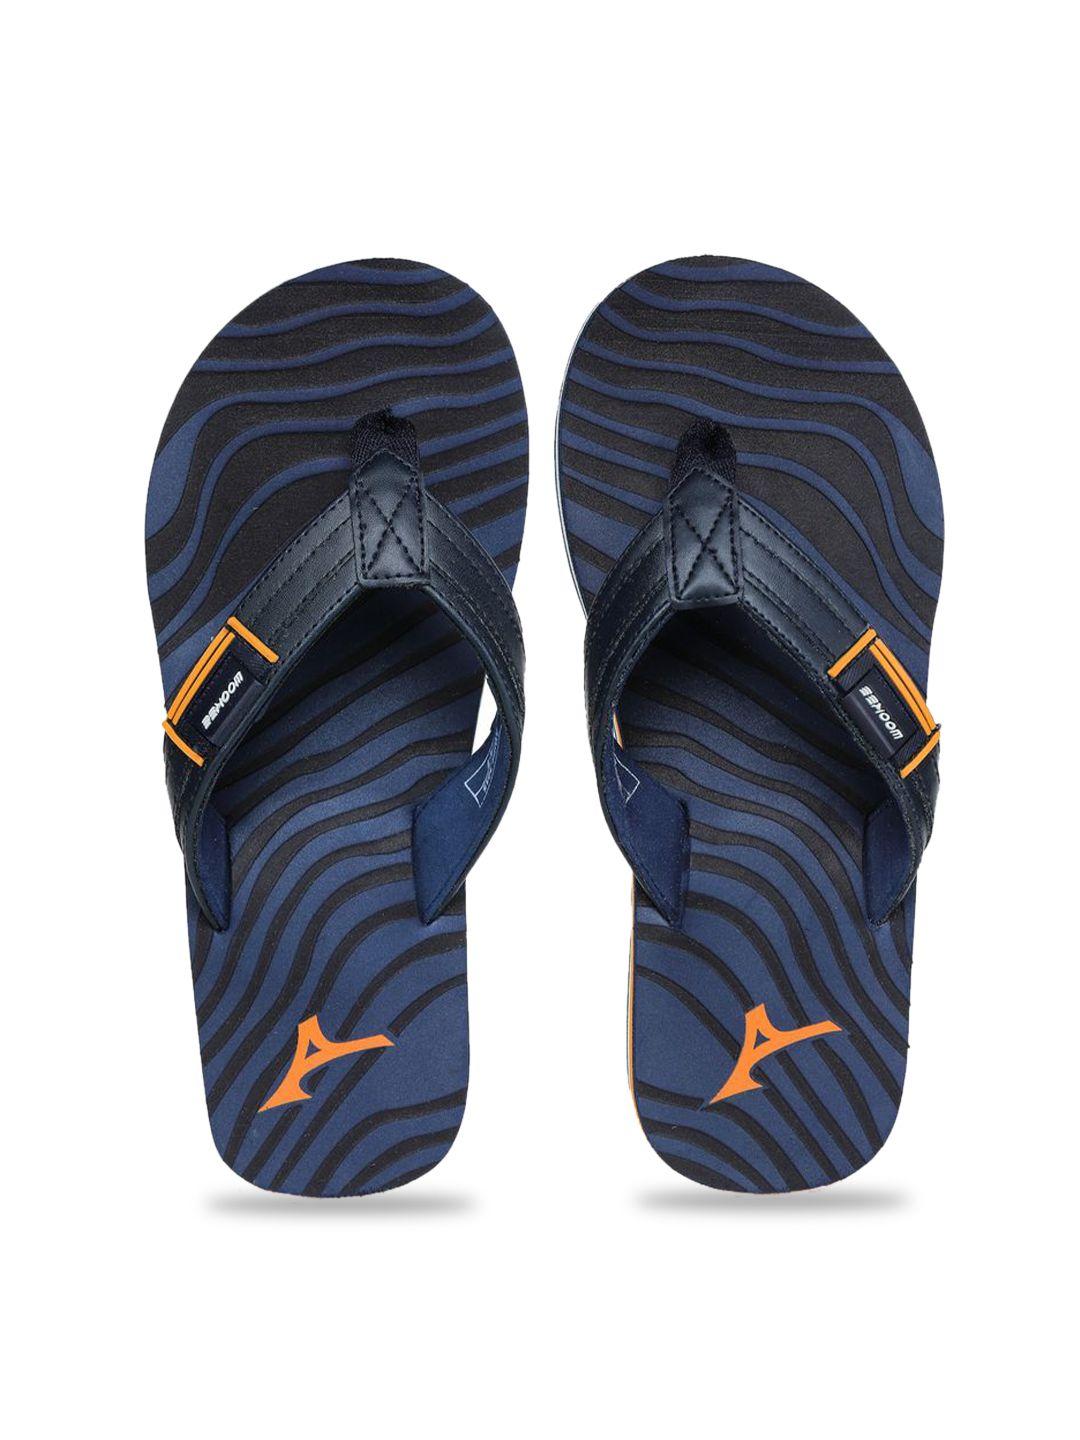 abros men navy blue & orange printed thong flip-flops